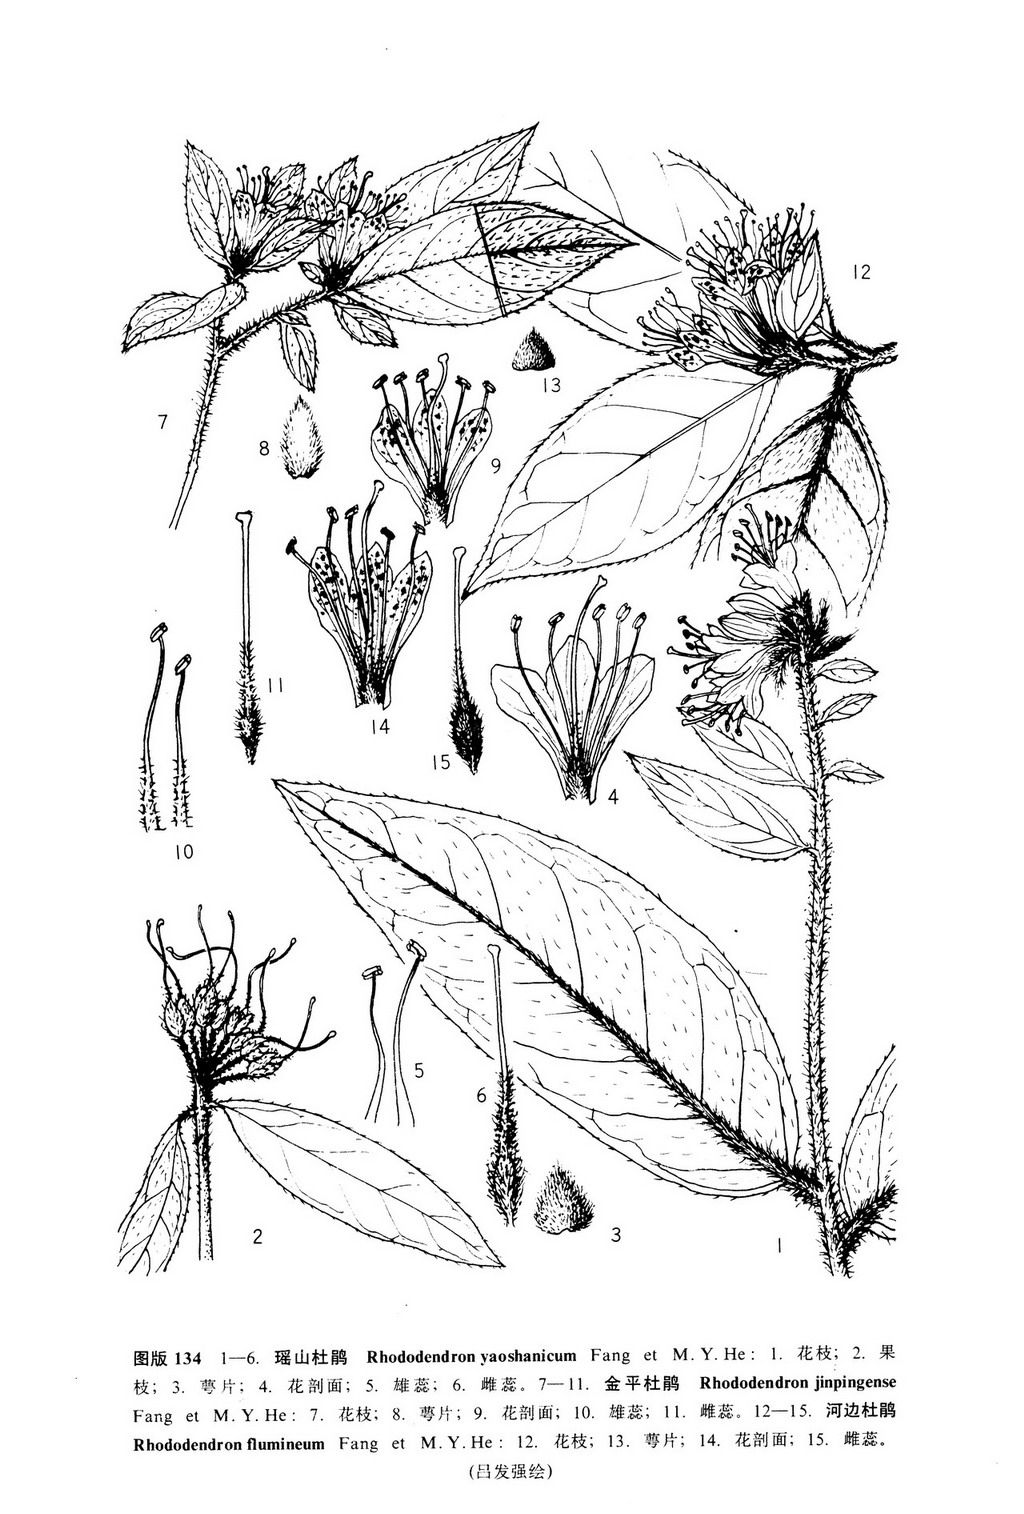 中國植物志 原版墨線圖